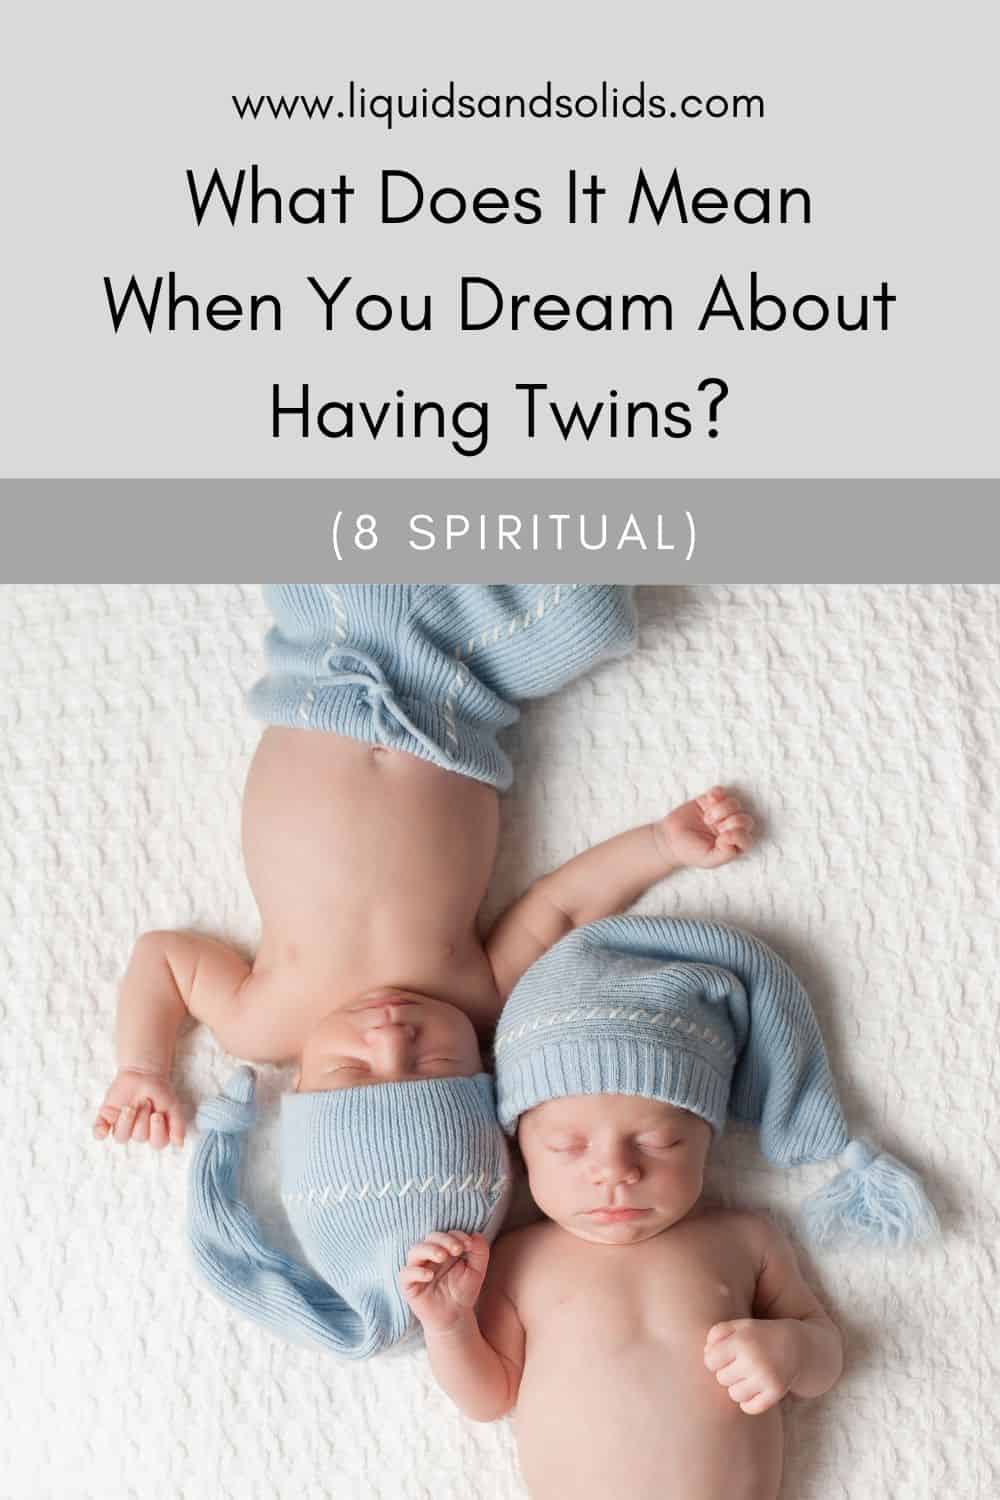  Sanjanje blizanaca, dječaka i djevojčice